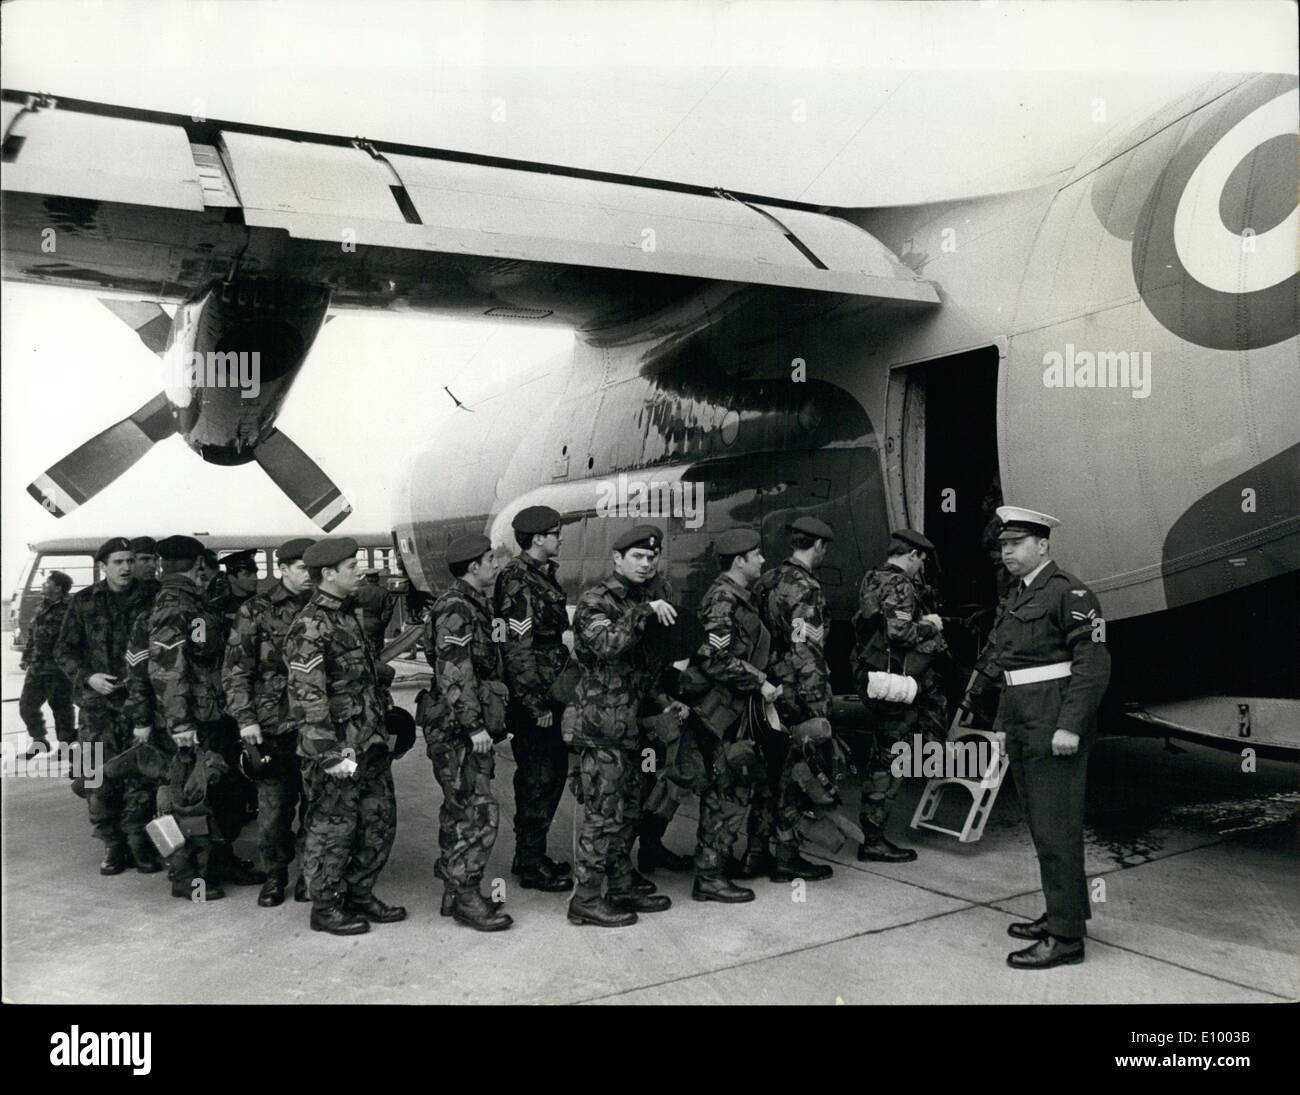 01 janvier 1972 - Grenadier guards laisser par air pour l'Honduras britannique : l'envoi d'une force opérationnelle navale britannique, dirigé par le porte-avions Ark Royal Caribbean à prendre part à de l'air combinée, le et de l'homme mer oeuvres au Honduras britannique a provoqué des protestations de Guatemala qui ont mis leurs forces armées en état d'alerte. Photo montre des hommes de la 1e Bataillon Grenadier Guards d'embarquer dans un avion de transport Hercules à la R.A.F. Lyneham, Wilts pour prendre part à des exercices de jungle au Honduras britannique. Banque D'Images